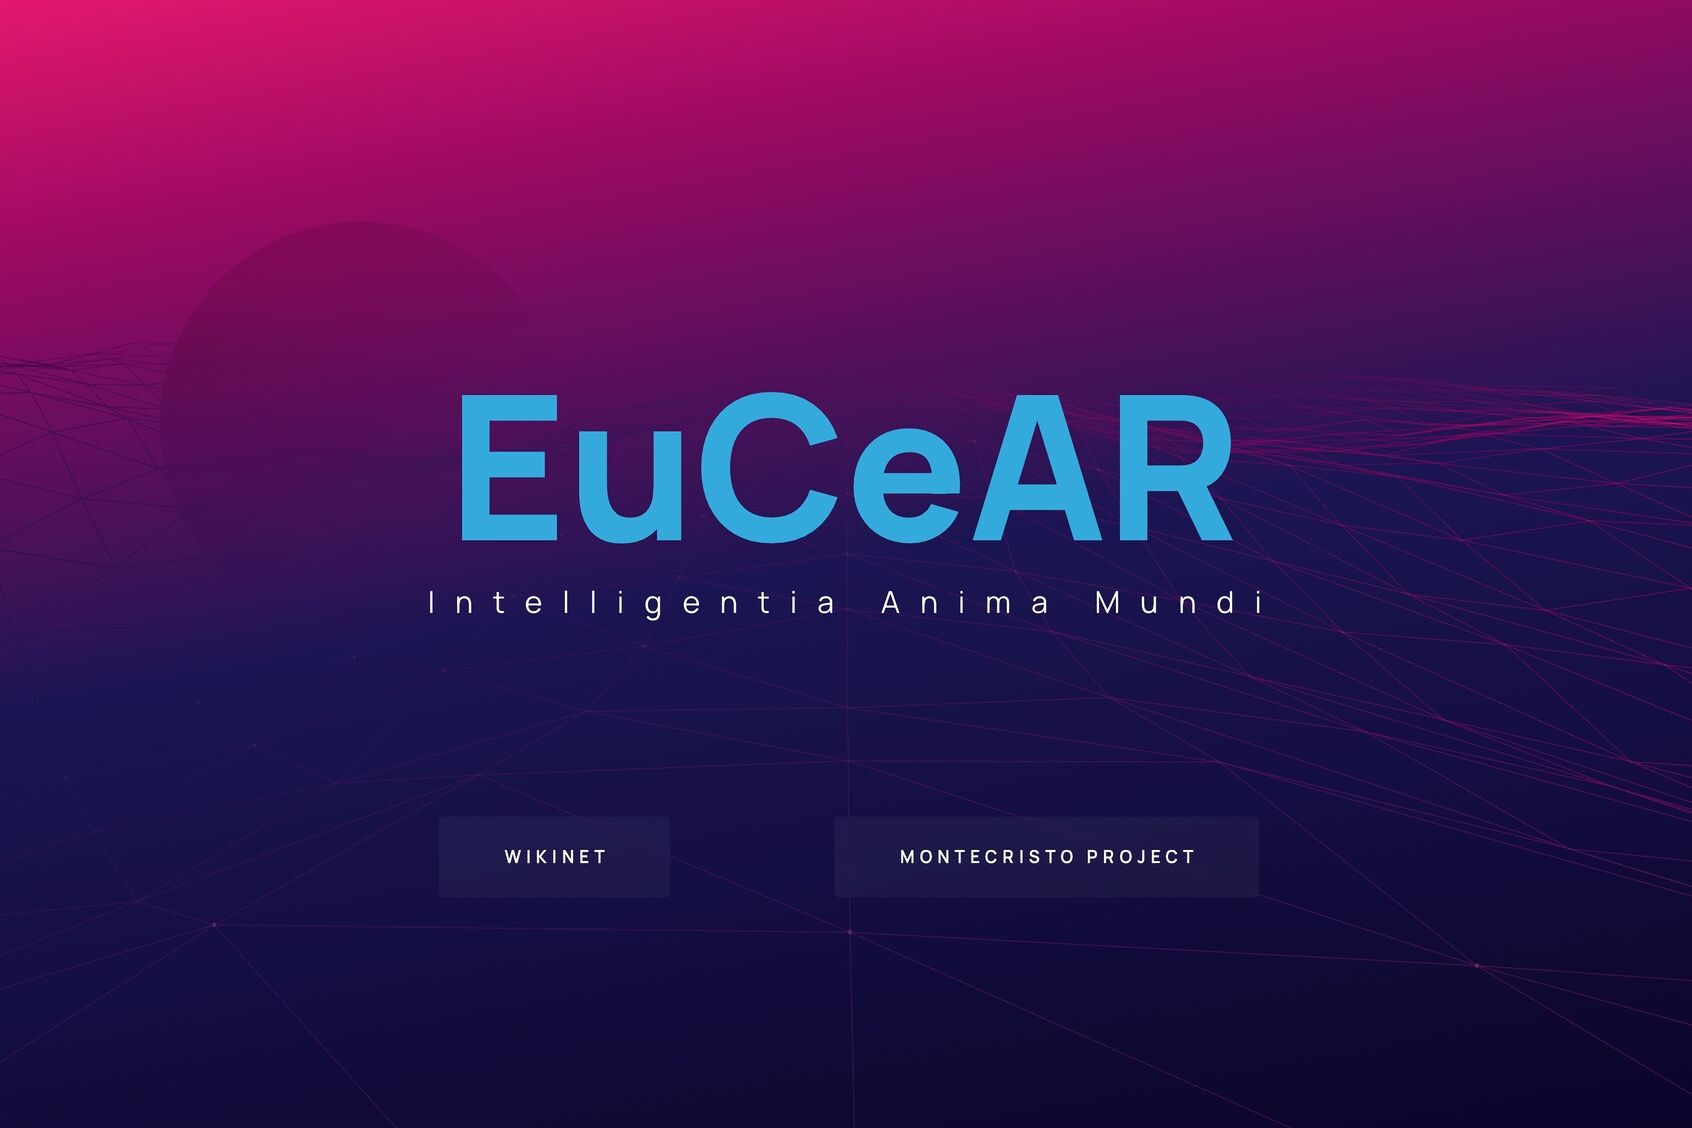 Literatura novatore: faqja e uljes së "Qendrës Evropiane për Kërkime të Avancuara", shkurtuar "EuCEAR", krijuar nga Edoardo Volpi Kellermann